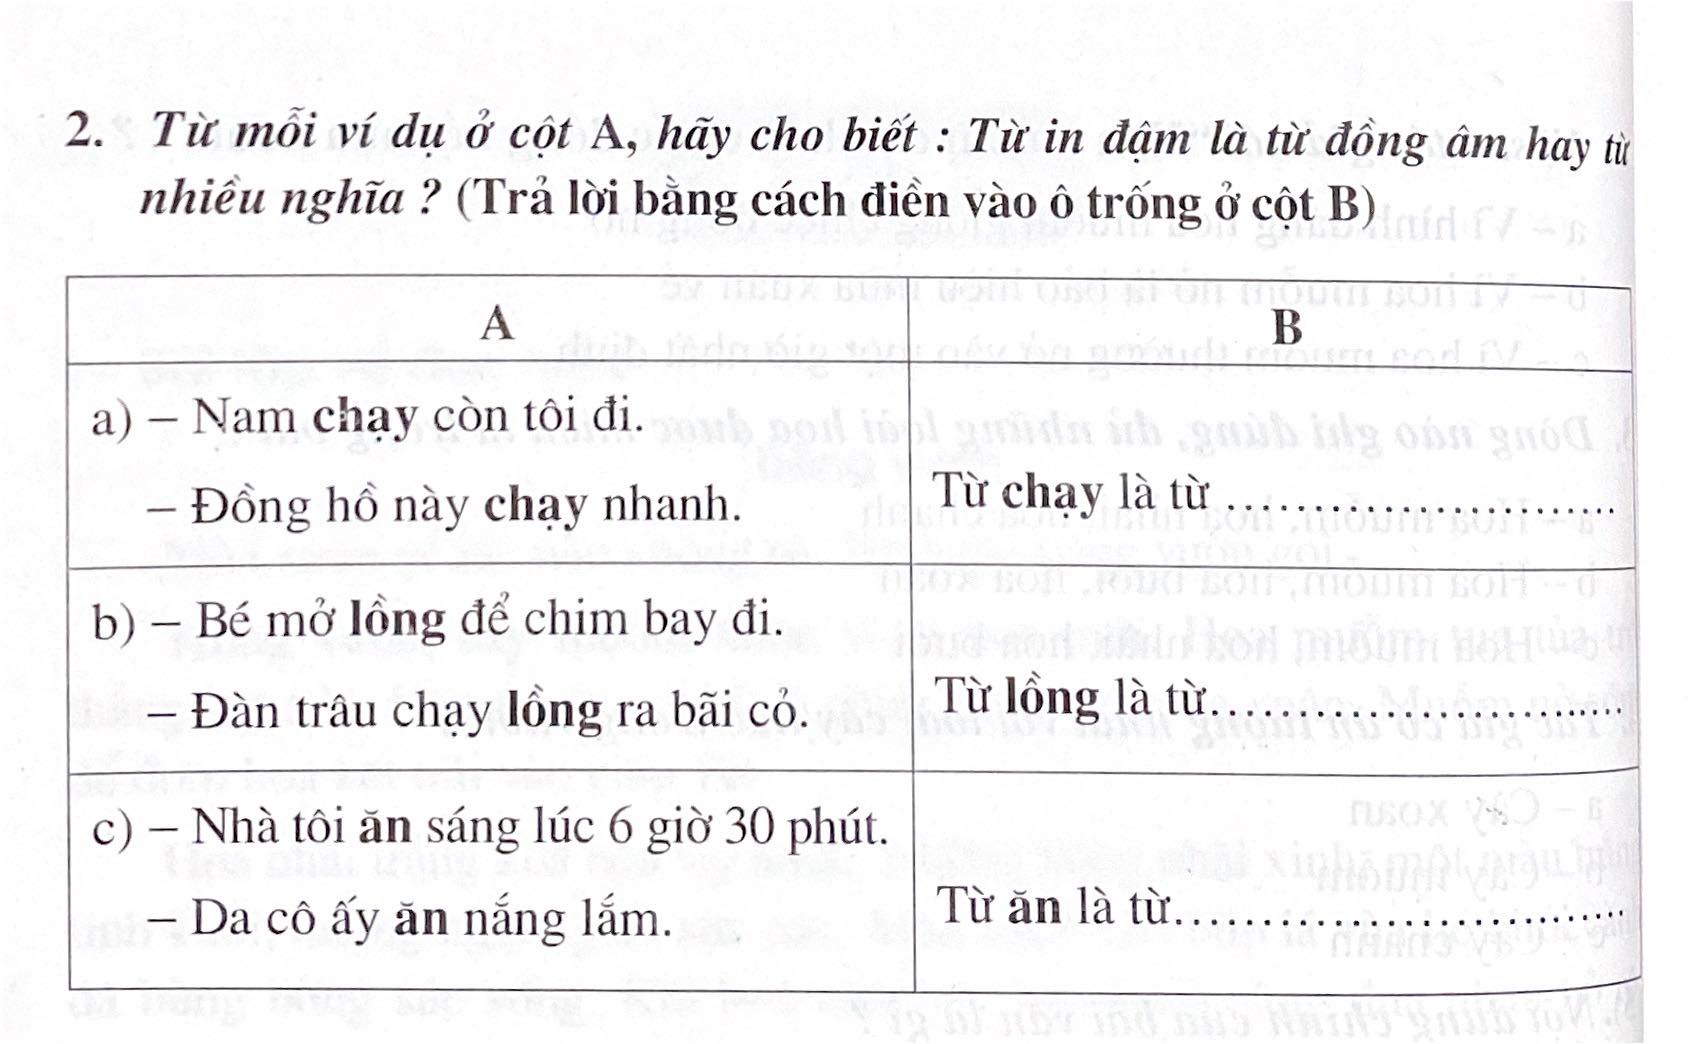 Phiếu bài tập tuần 8 tiếng Việt 5 tập 1